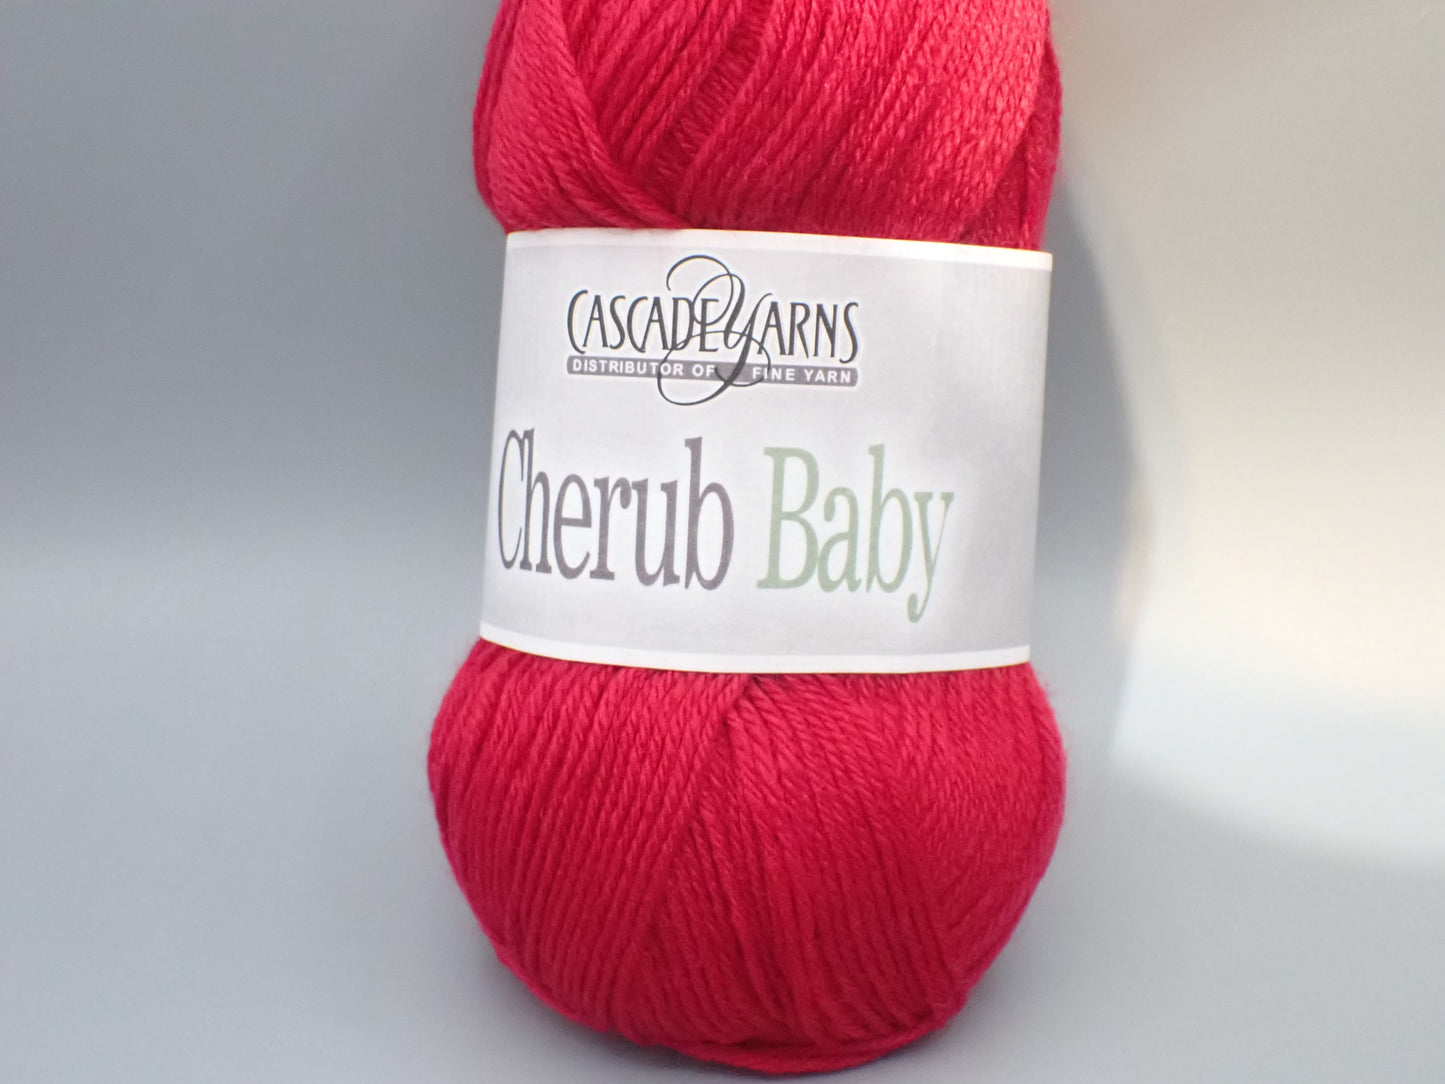 Cascade Yarns Cherub Baby Sock weight Ruby